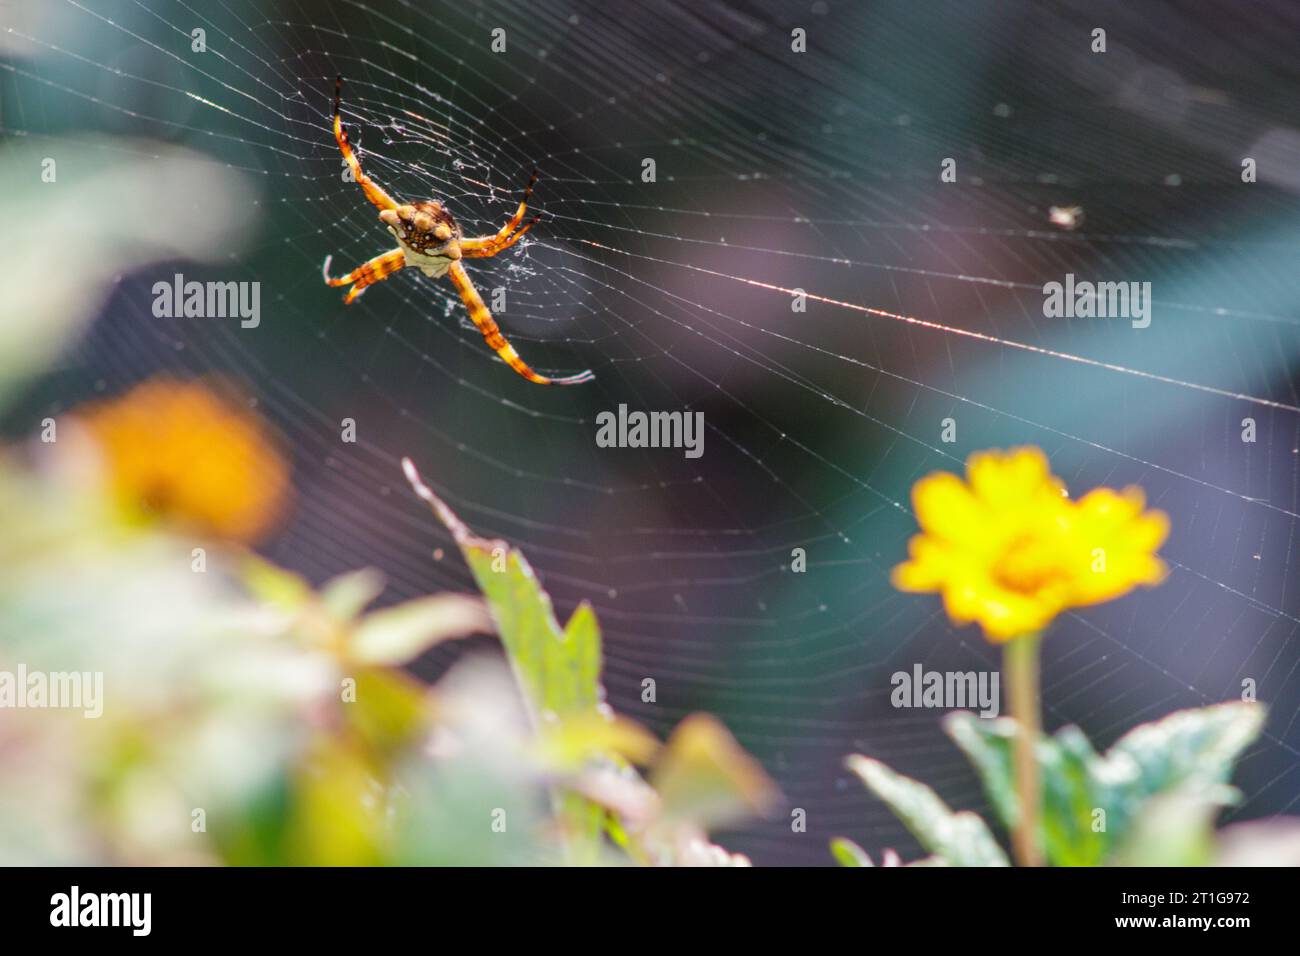 Silver spider outdoors in Rio de Janeiro, Brazil. Stock Photo